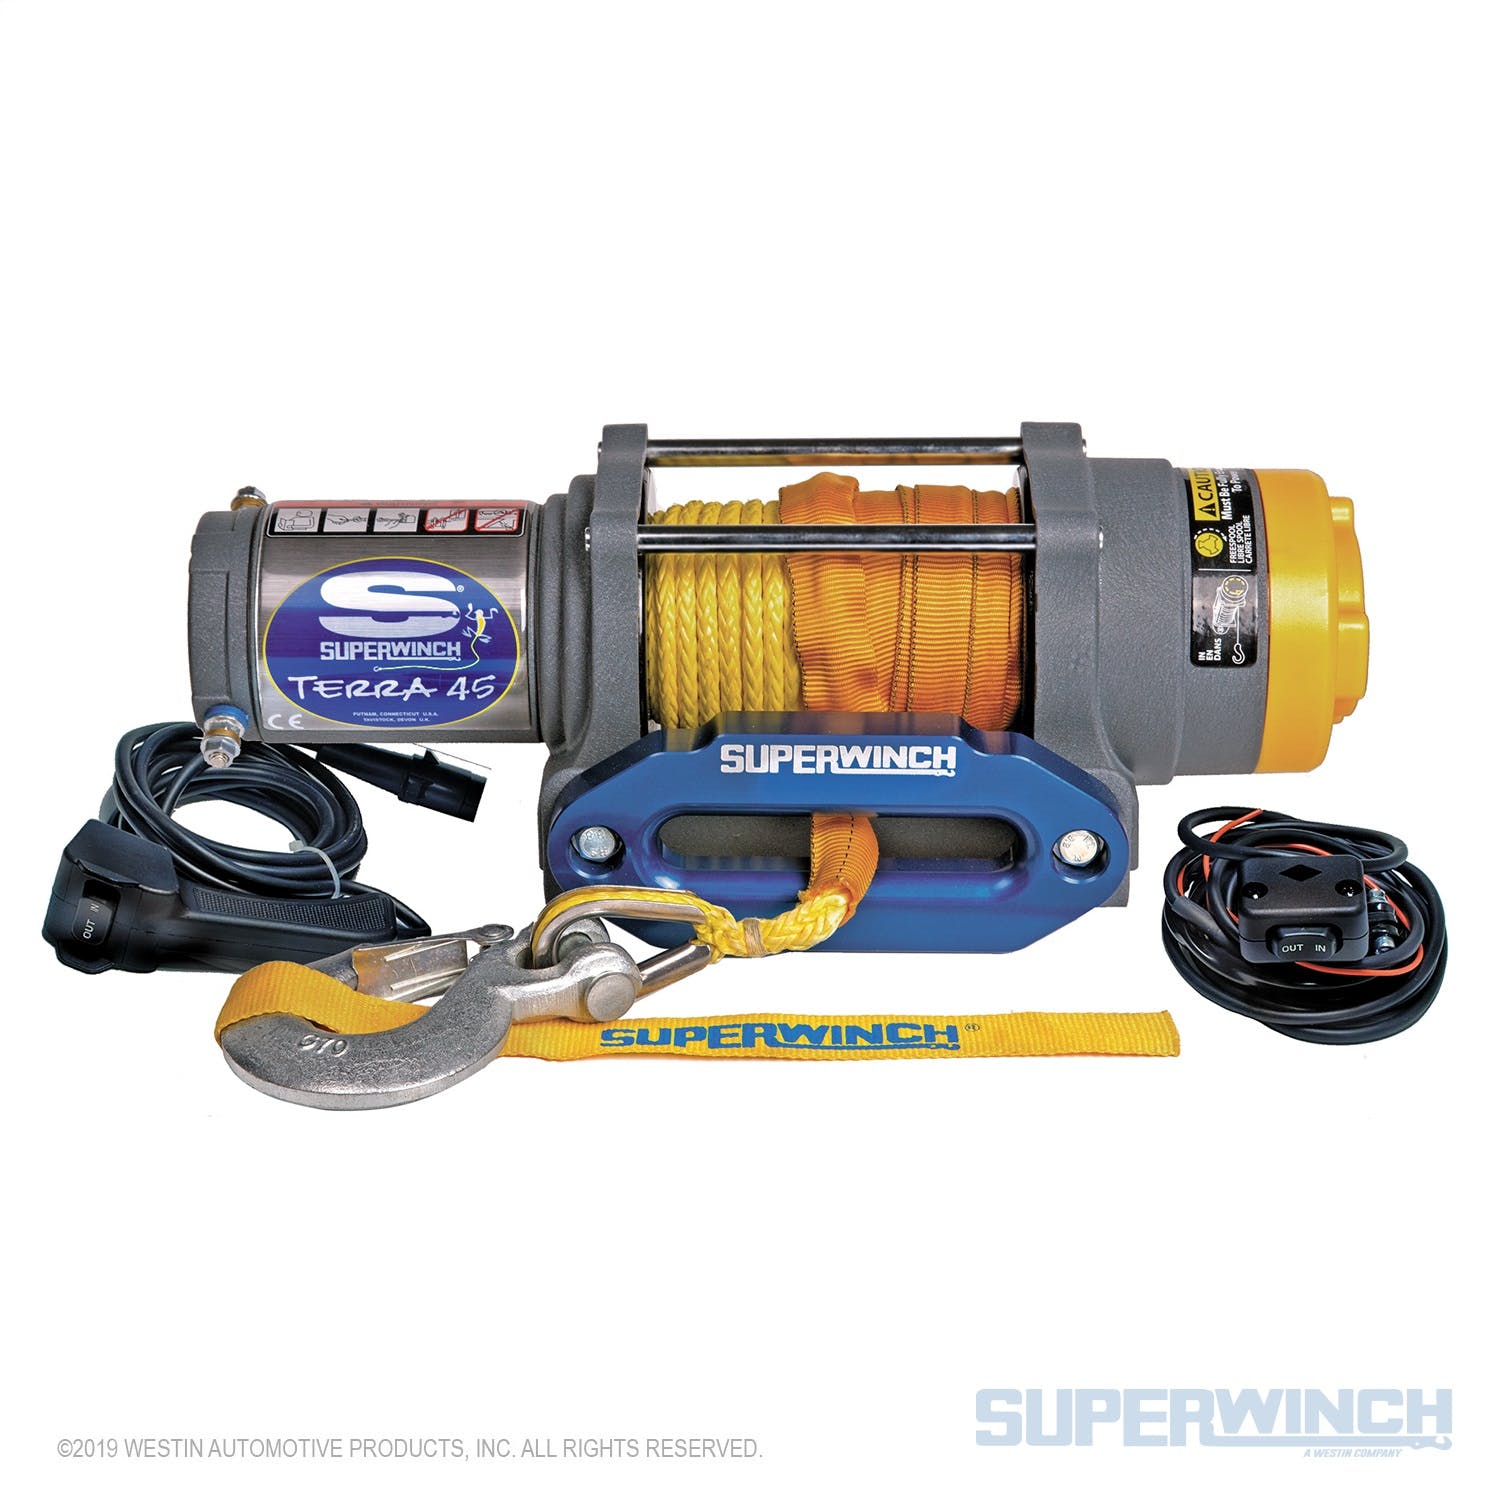 Superwinch 1145230 Terra 45SR Winch